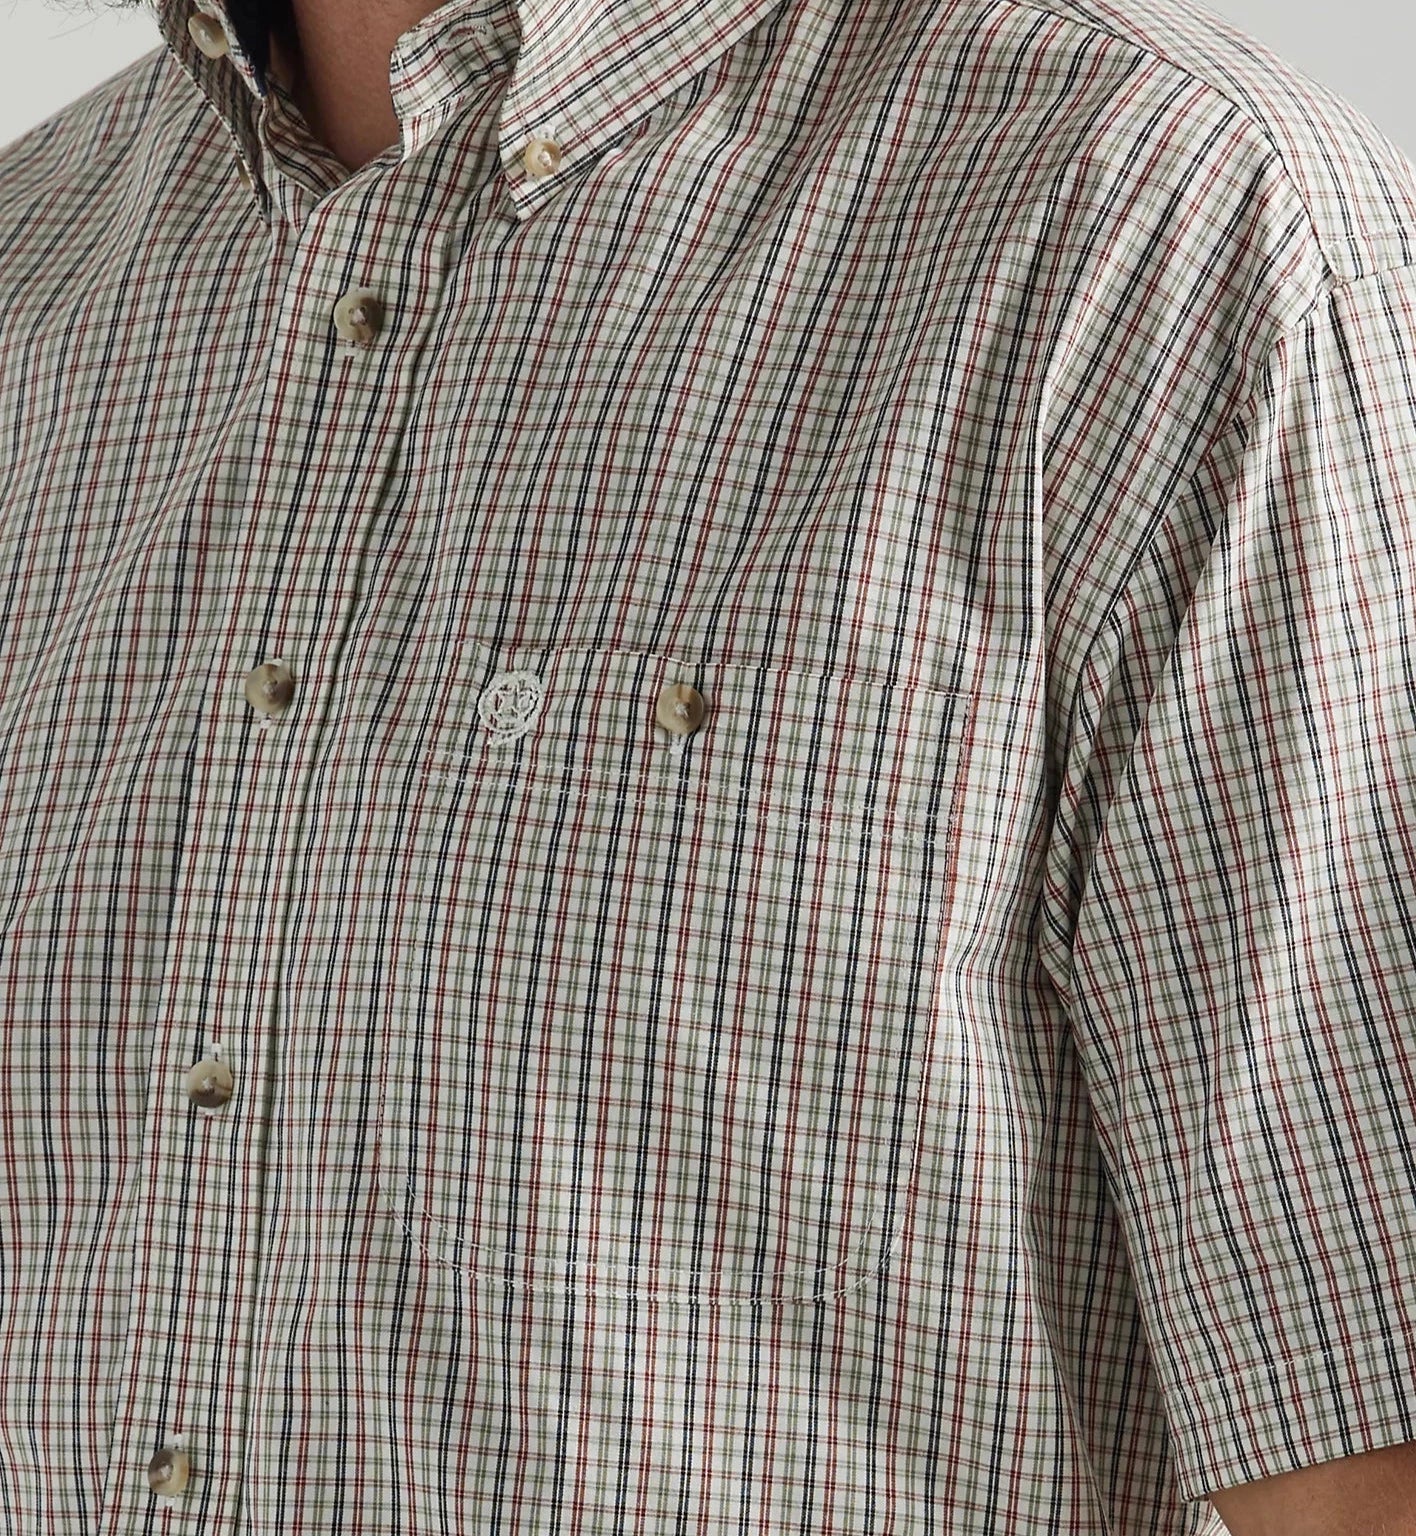 Wrangler Men's George Strait Short Sleeve Shirt STYLE 112324873